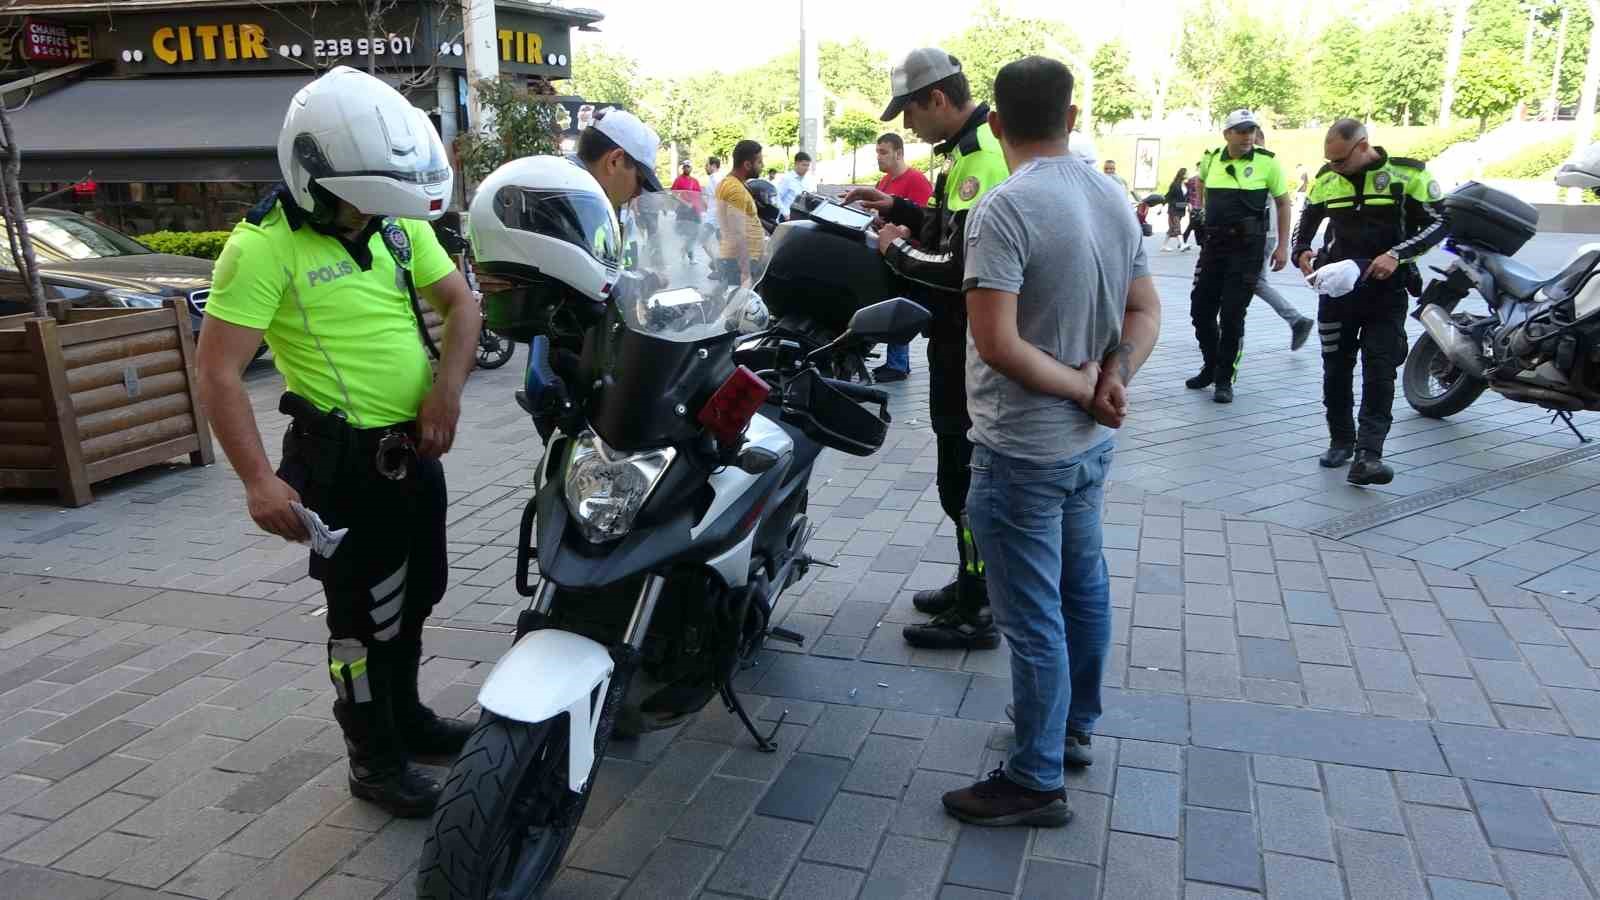 taksimde yaya yolunu isgal eden motosiklet suruculerine ceza yagdi 2 pJRVpU1y